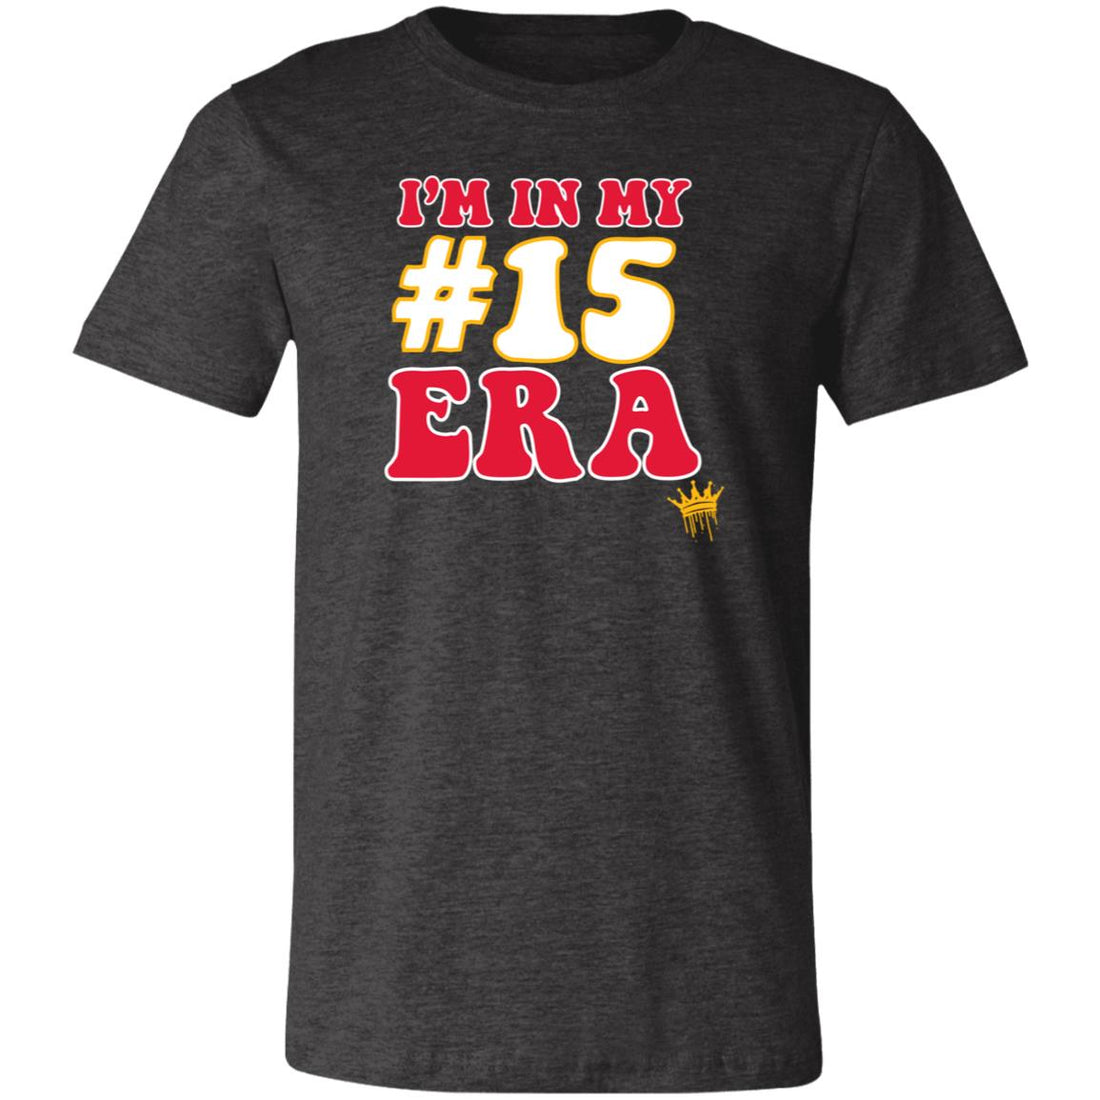 #15 ERA Short-Sleeve T-Shirt - T-Shirts - Positively Sassy - #15 ERA Short-Sleeve T-Shirt